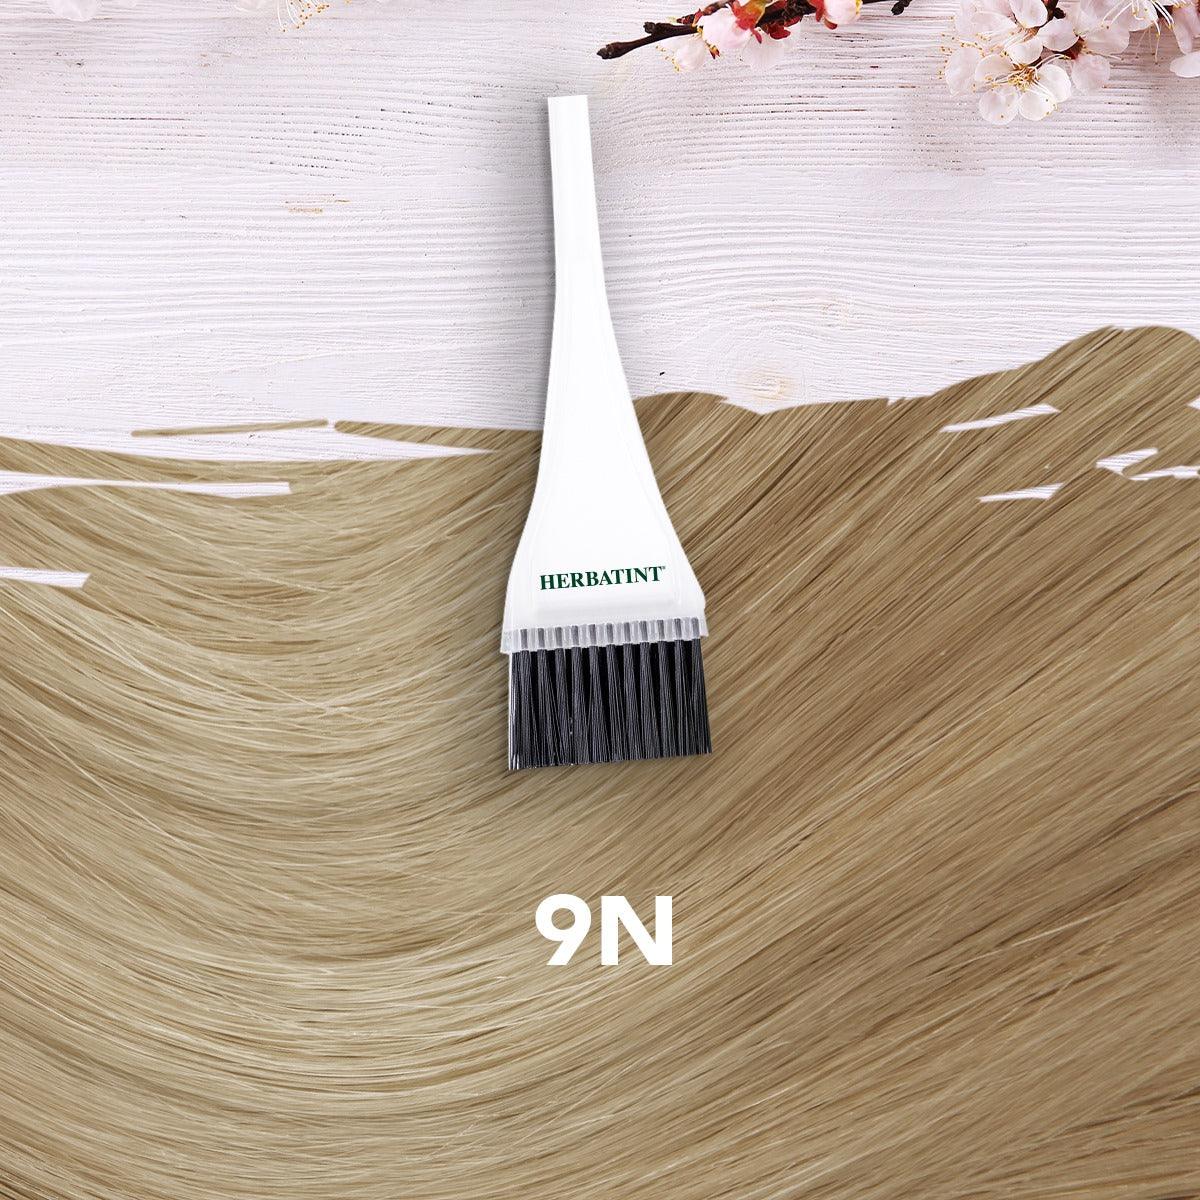 צבע טבעי לשיער גוון בלונד דבש 9N | הרבטינט - Herbatint - פריקפוא